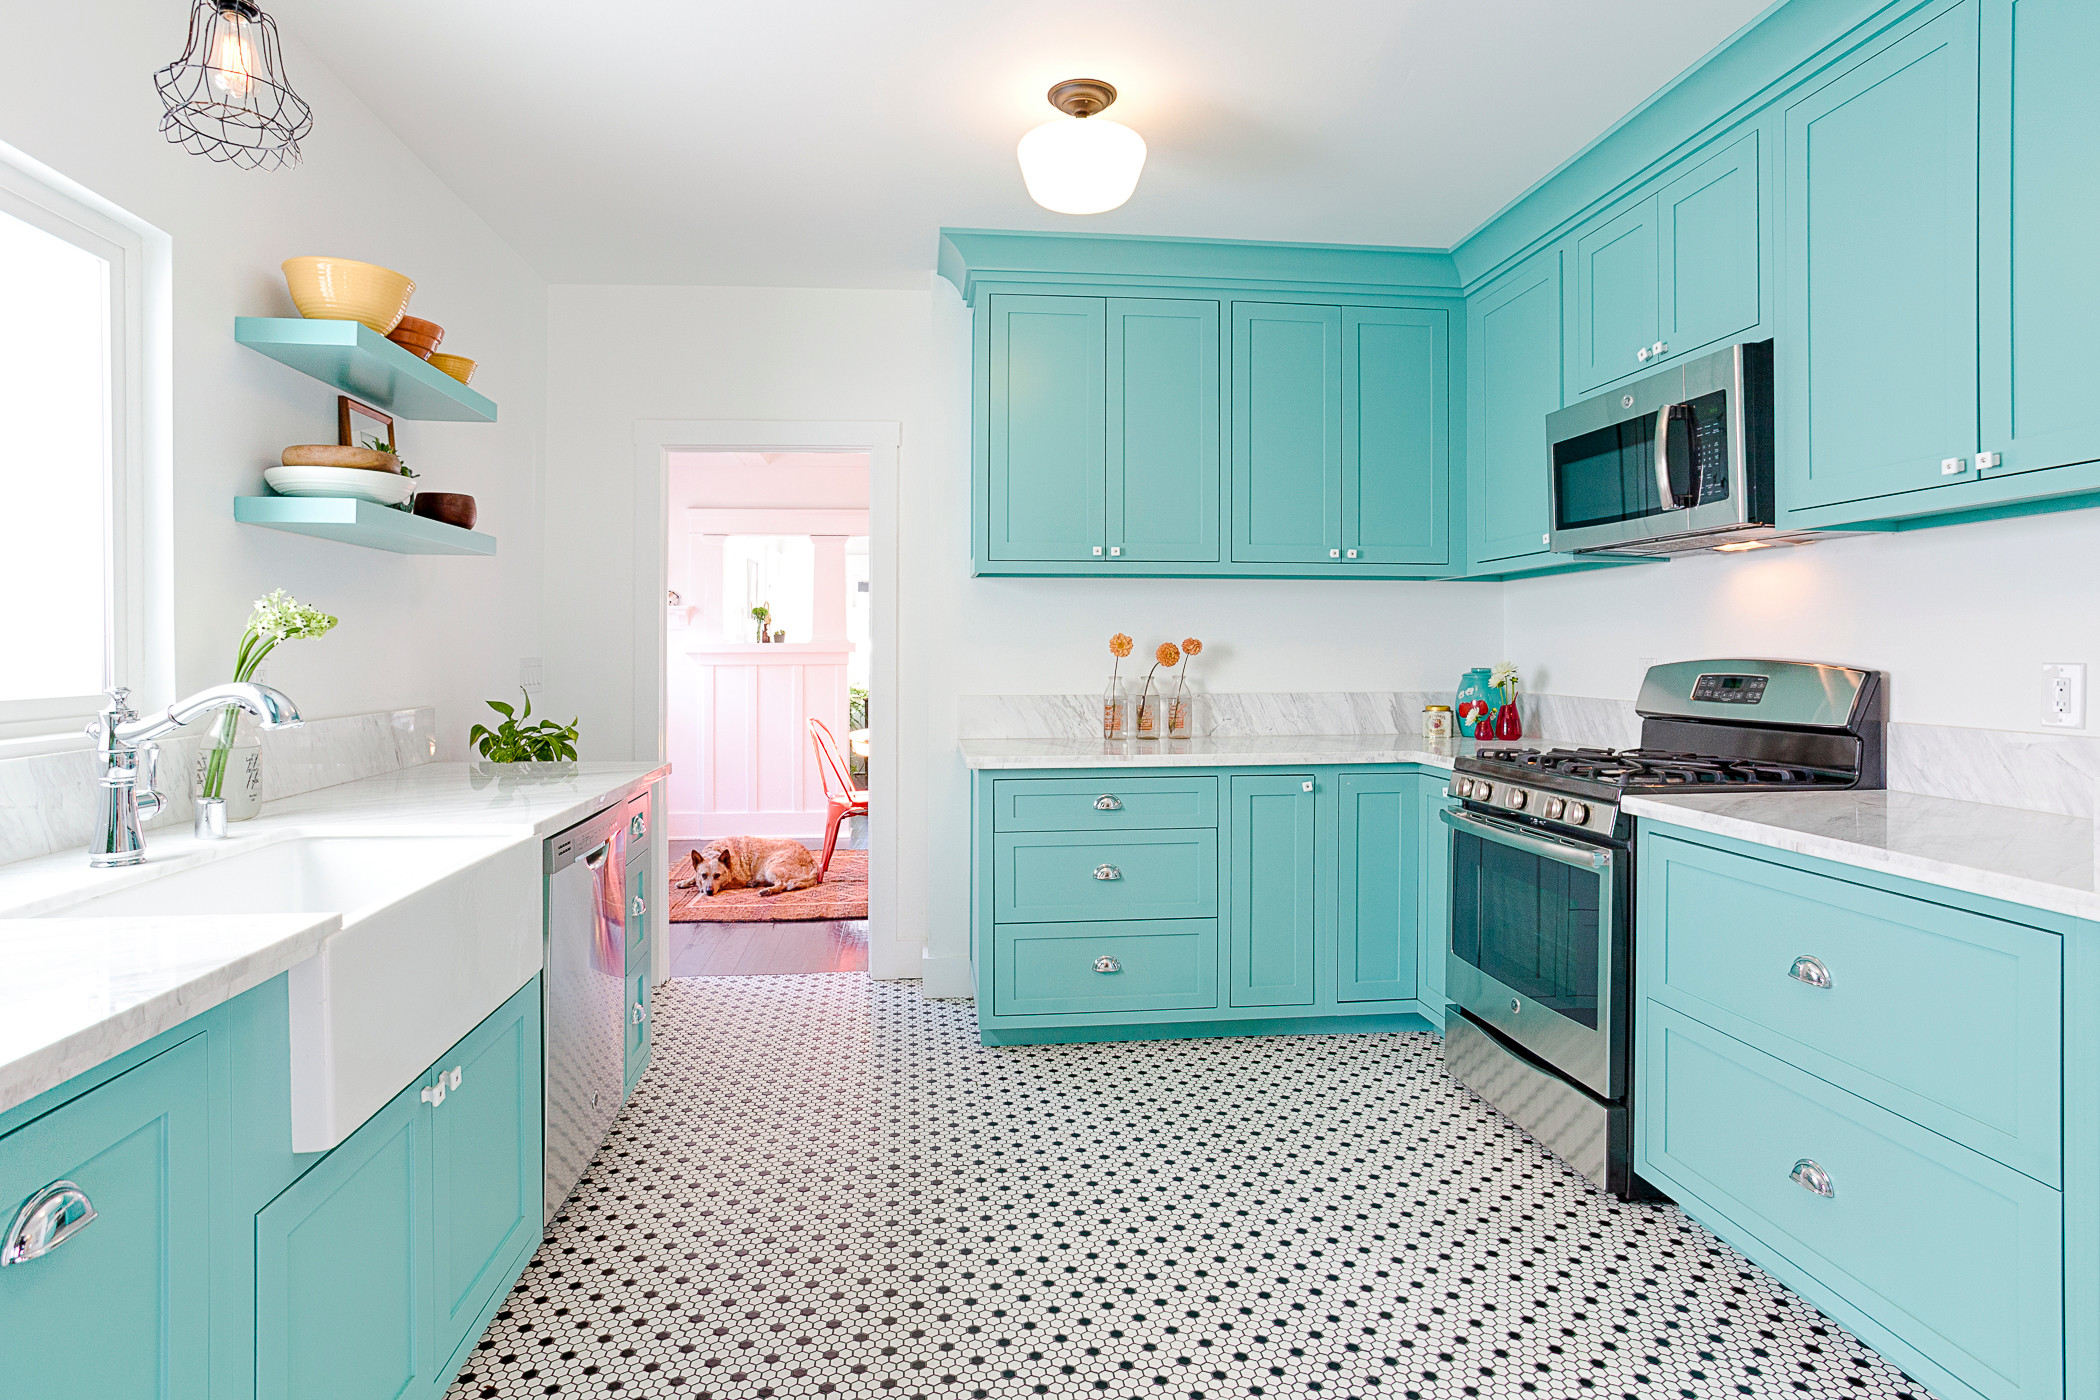 Kitchen-Aid Appliances  Tiffany blue kitchen, Blue kitchen decor, Aqua  kitchen